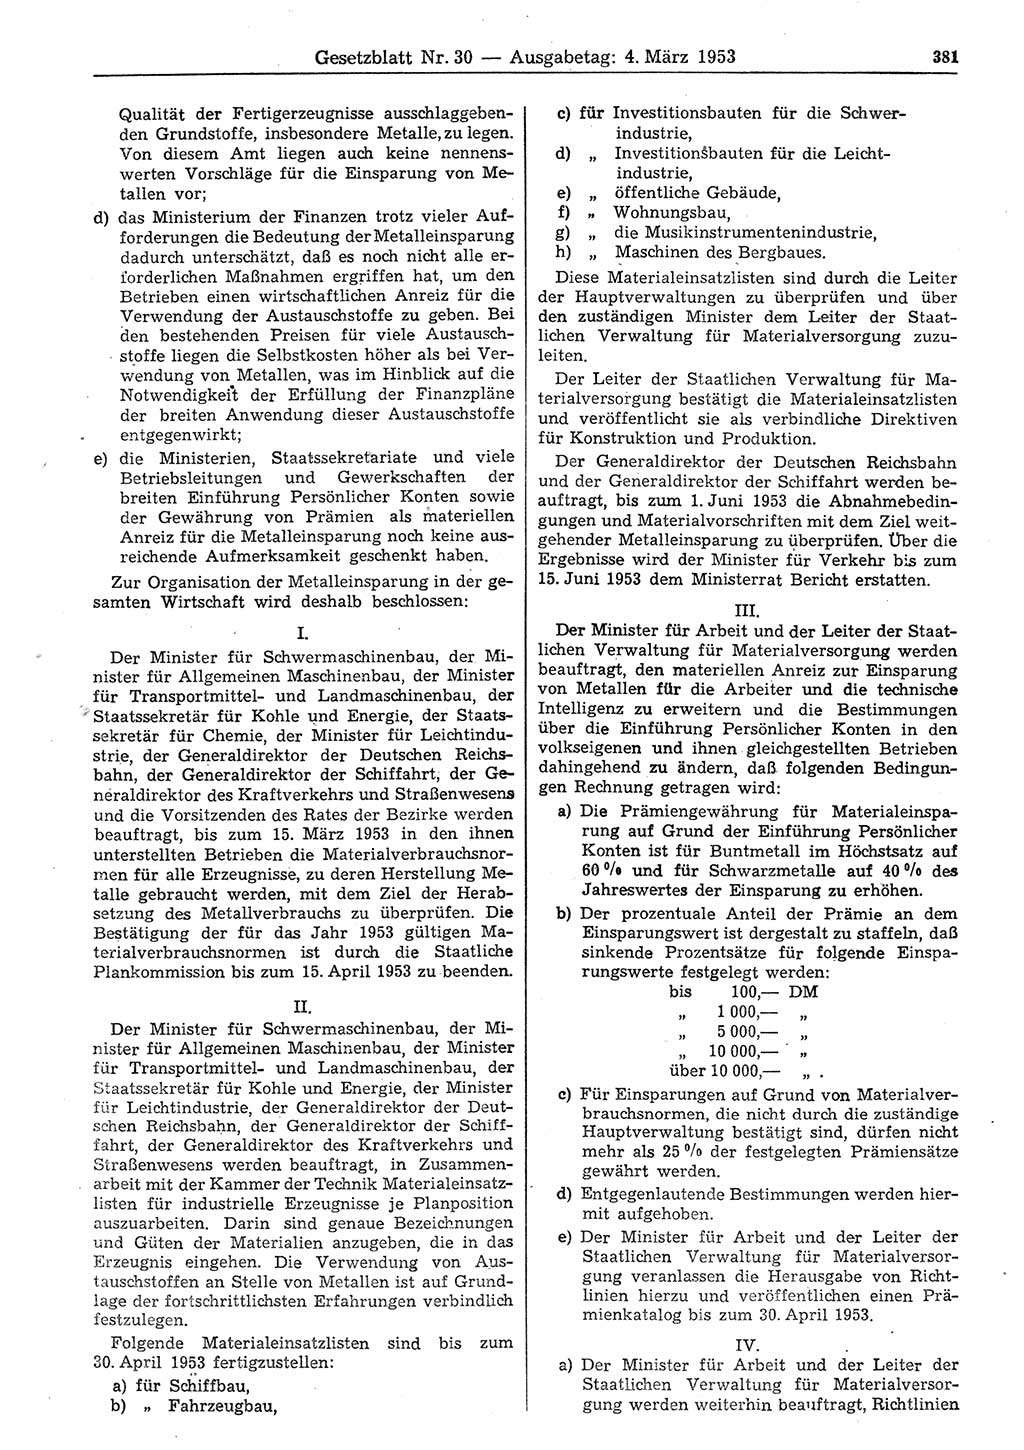 Gesetzblatt (GBl.) der Deutschen Demokratischen Republik (DDR) 1953, Seite 381 (GBl. DDR 1953, S. 381)